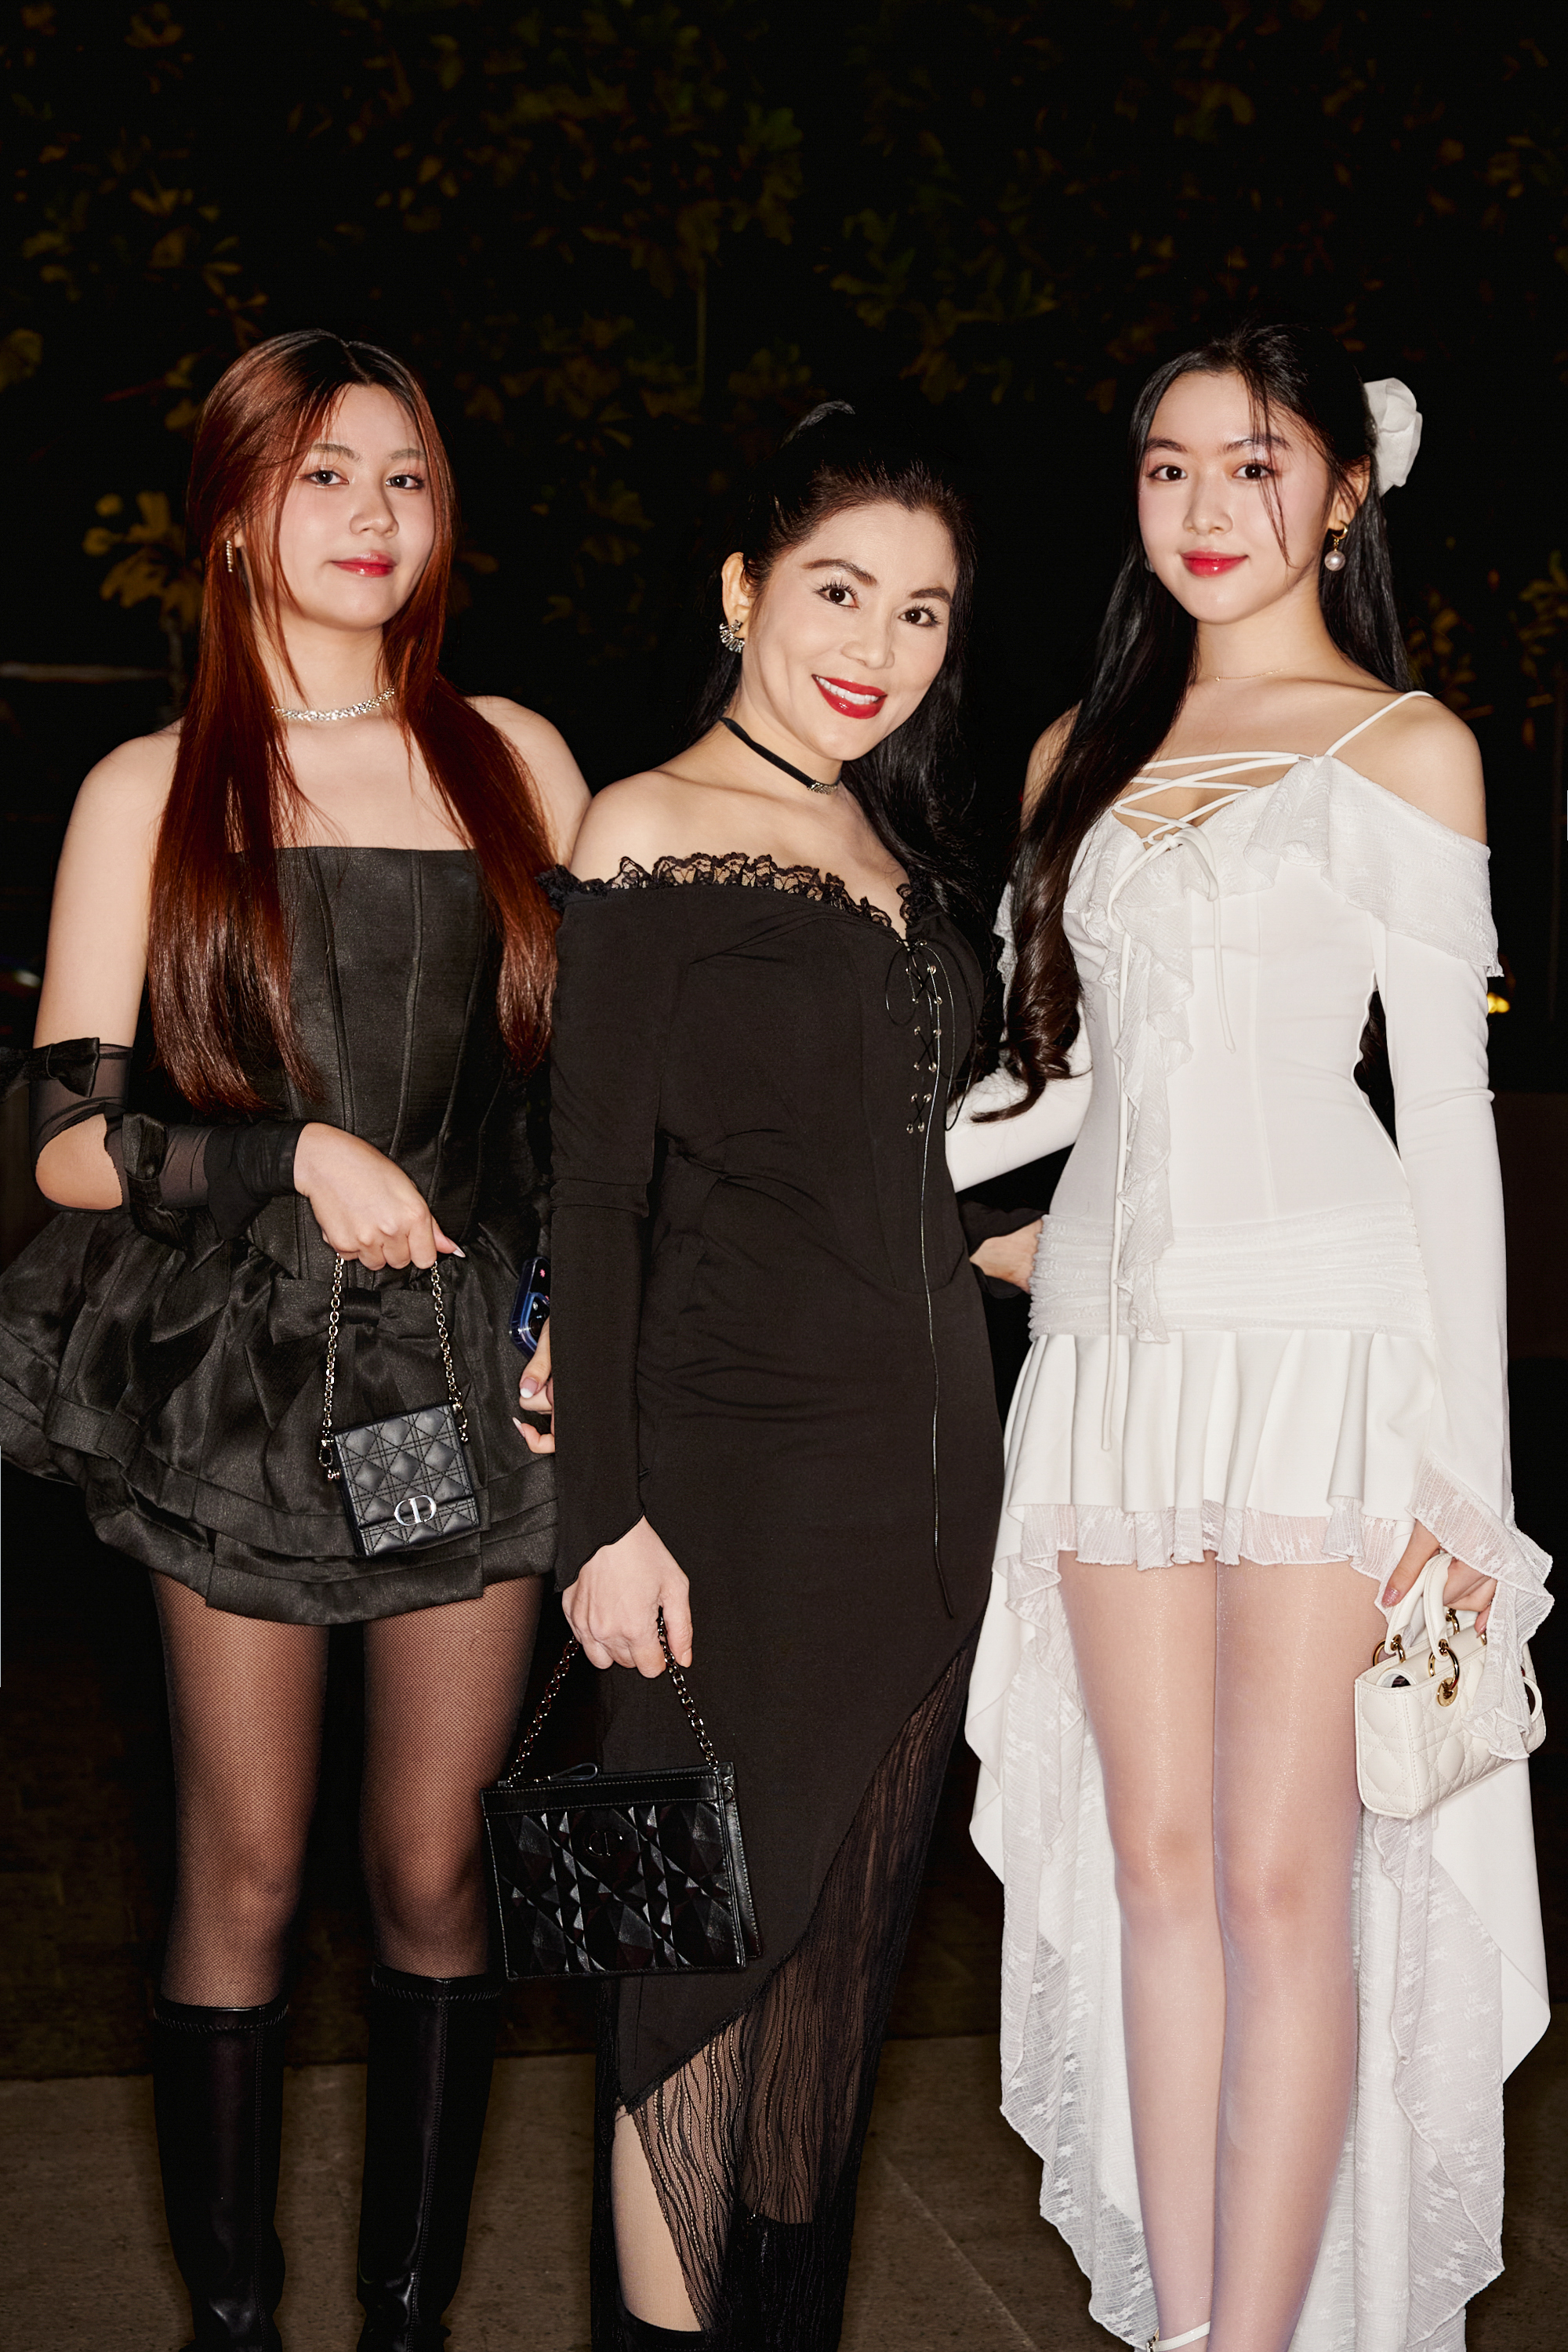 Xuất hiện cùng mẹ tại sự kiện thời trang, hai con gái Quyền Linh trở thành tâm điểm chú ý bởi nhan sắc được nhận xét xinh như hoa hậu. Cả hai chọn tông màu đối lập tôn chiều cao nổi bật